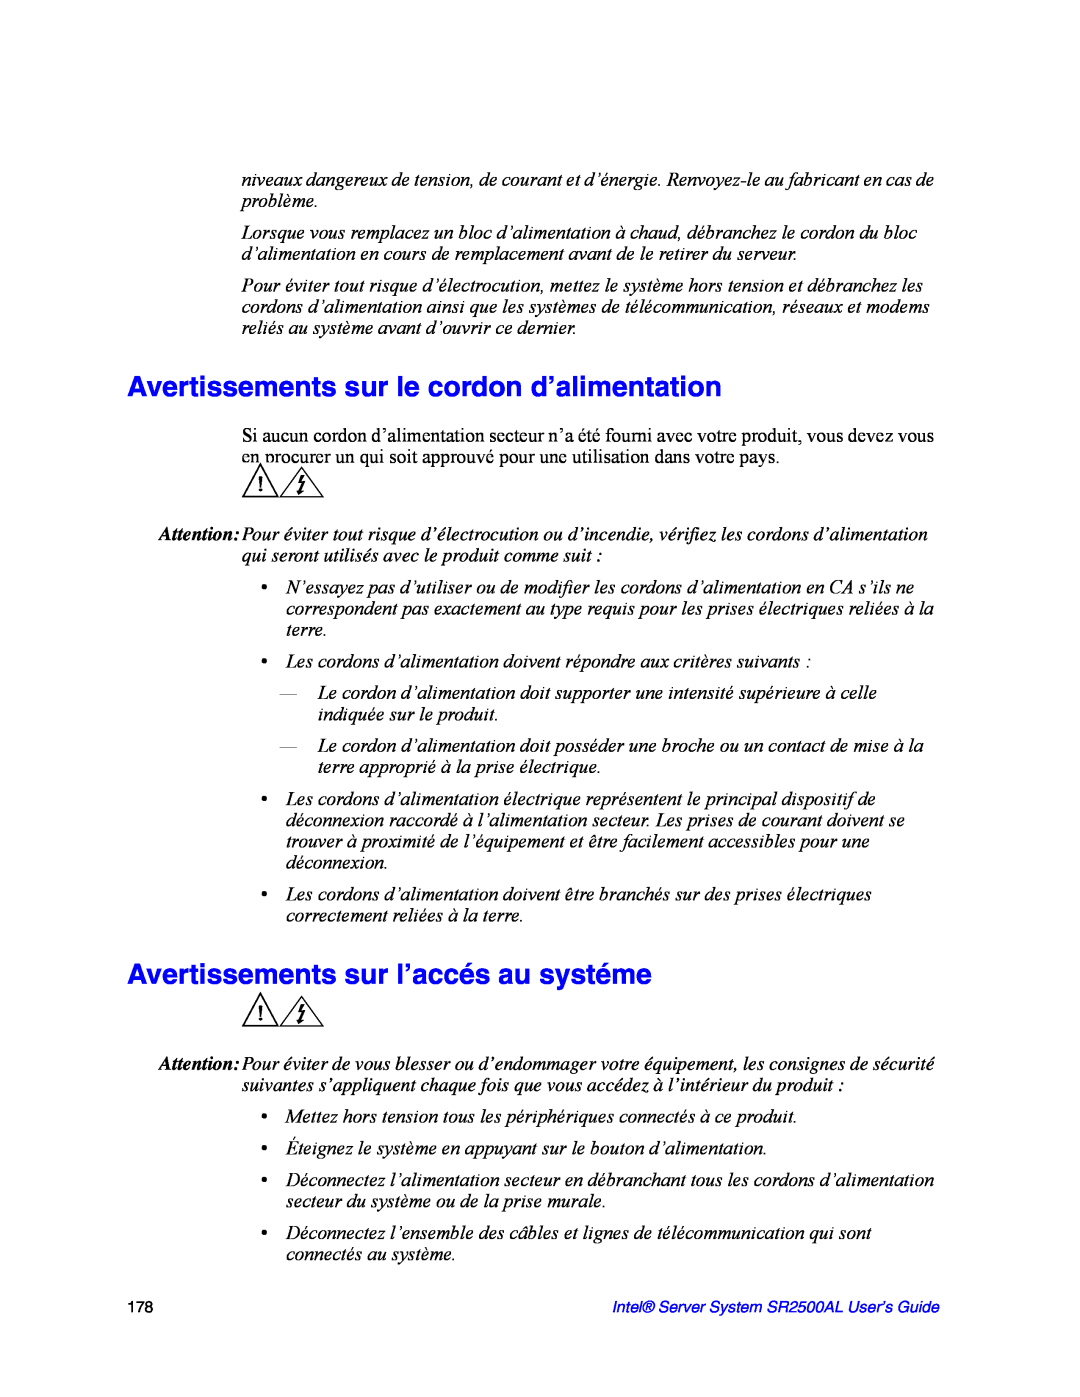 Intel SR2500AL manual Avertissements sur le cordon d’alimentation, Avertissements sur l’accés au systéme 